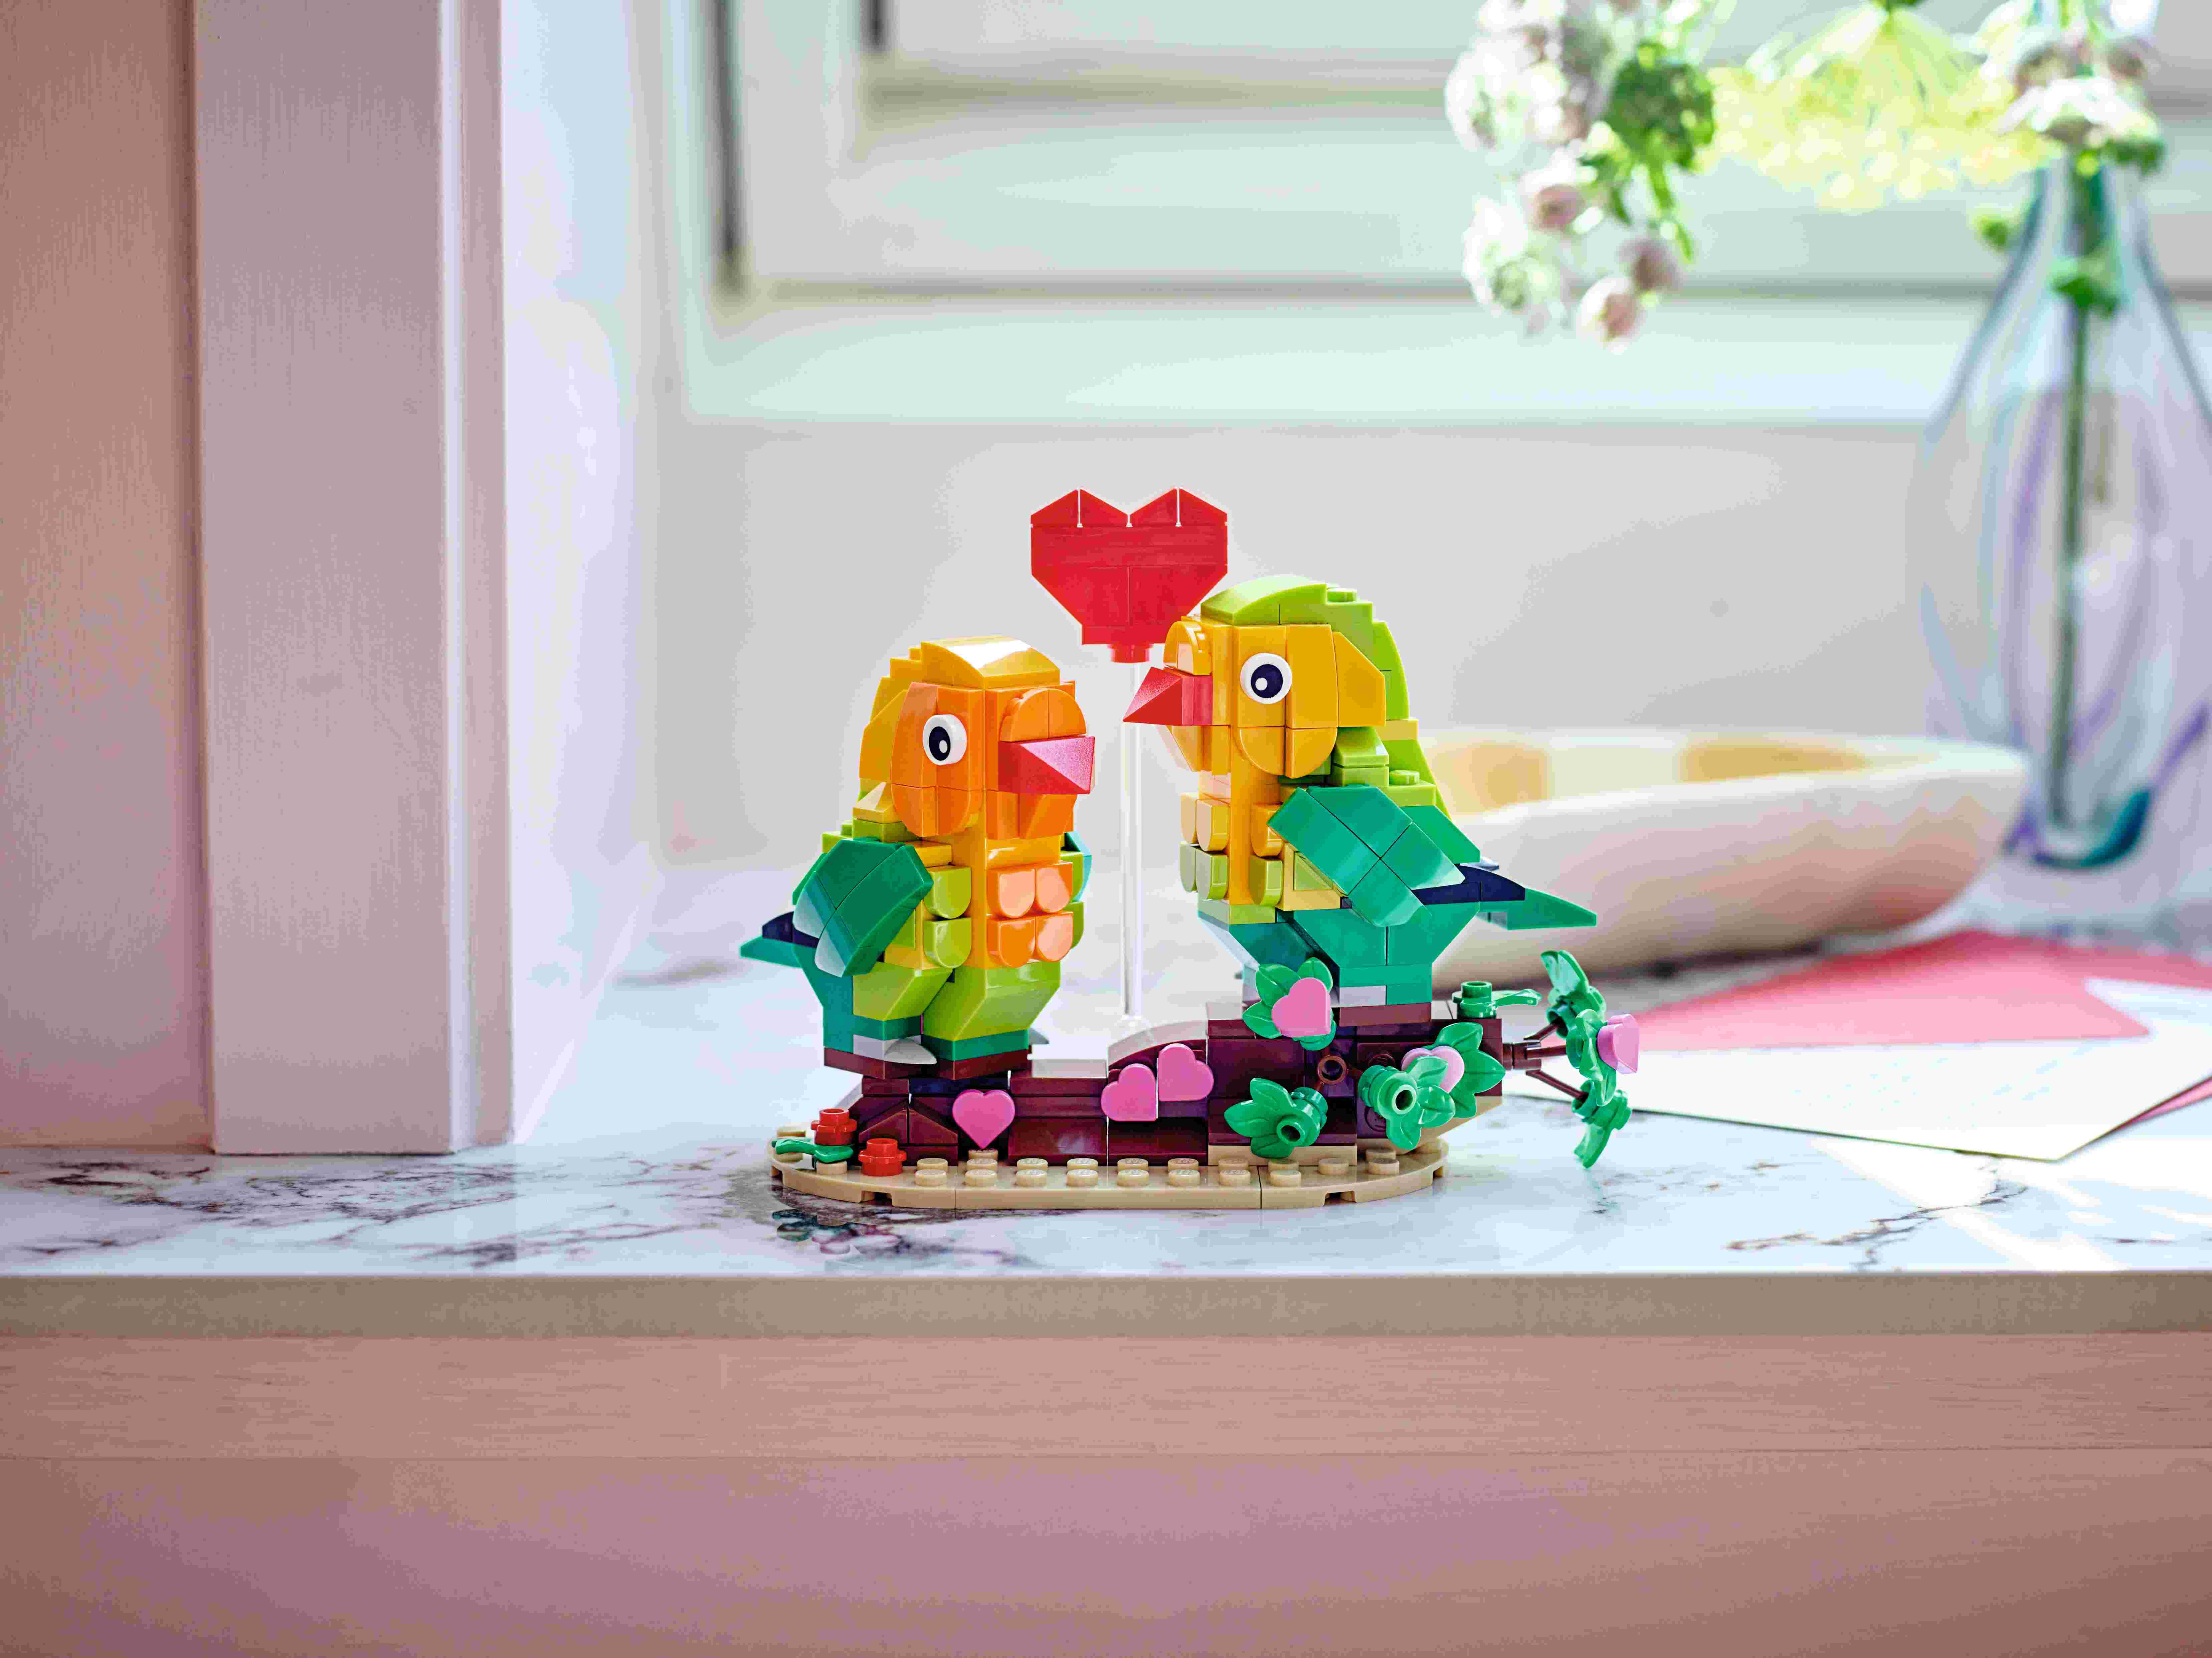 LEGO 40522 Valentins-Turteltauben, 2 Lovebirds, Unzertrennliche